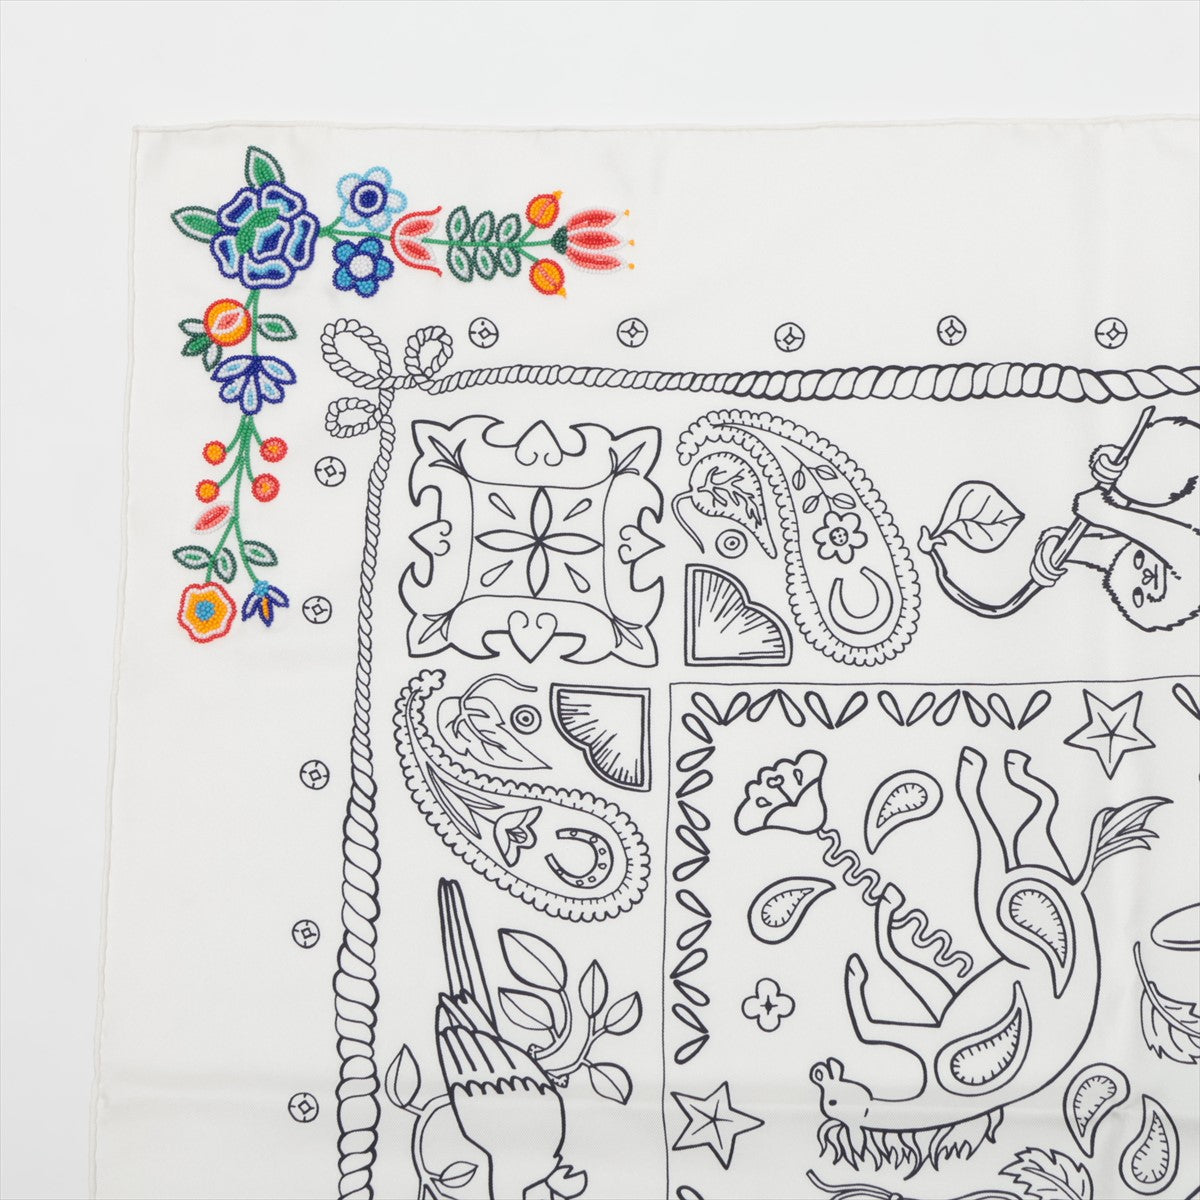 エルメス アニマル バンダナ フルール ペルレ スカーフ シルク ホワイト  河原シンスケ カレ65 ビーズ 刺繍